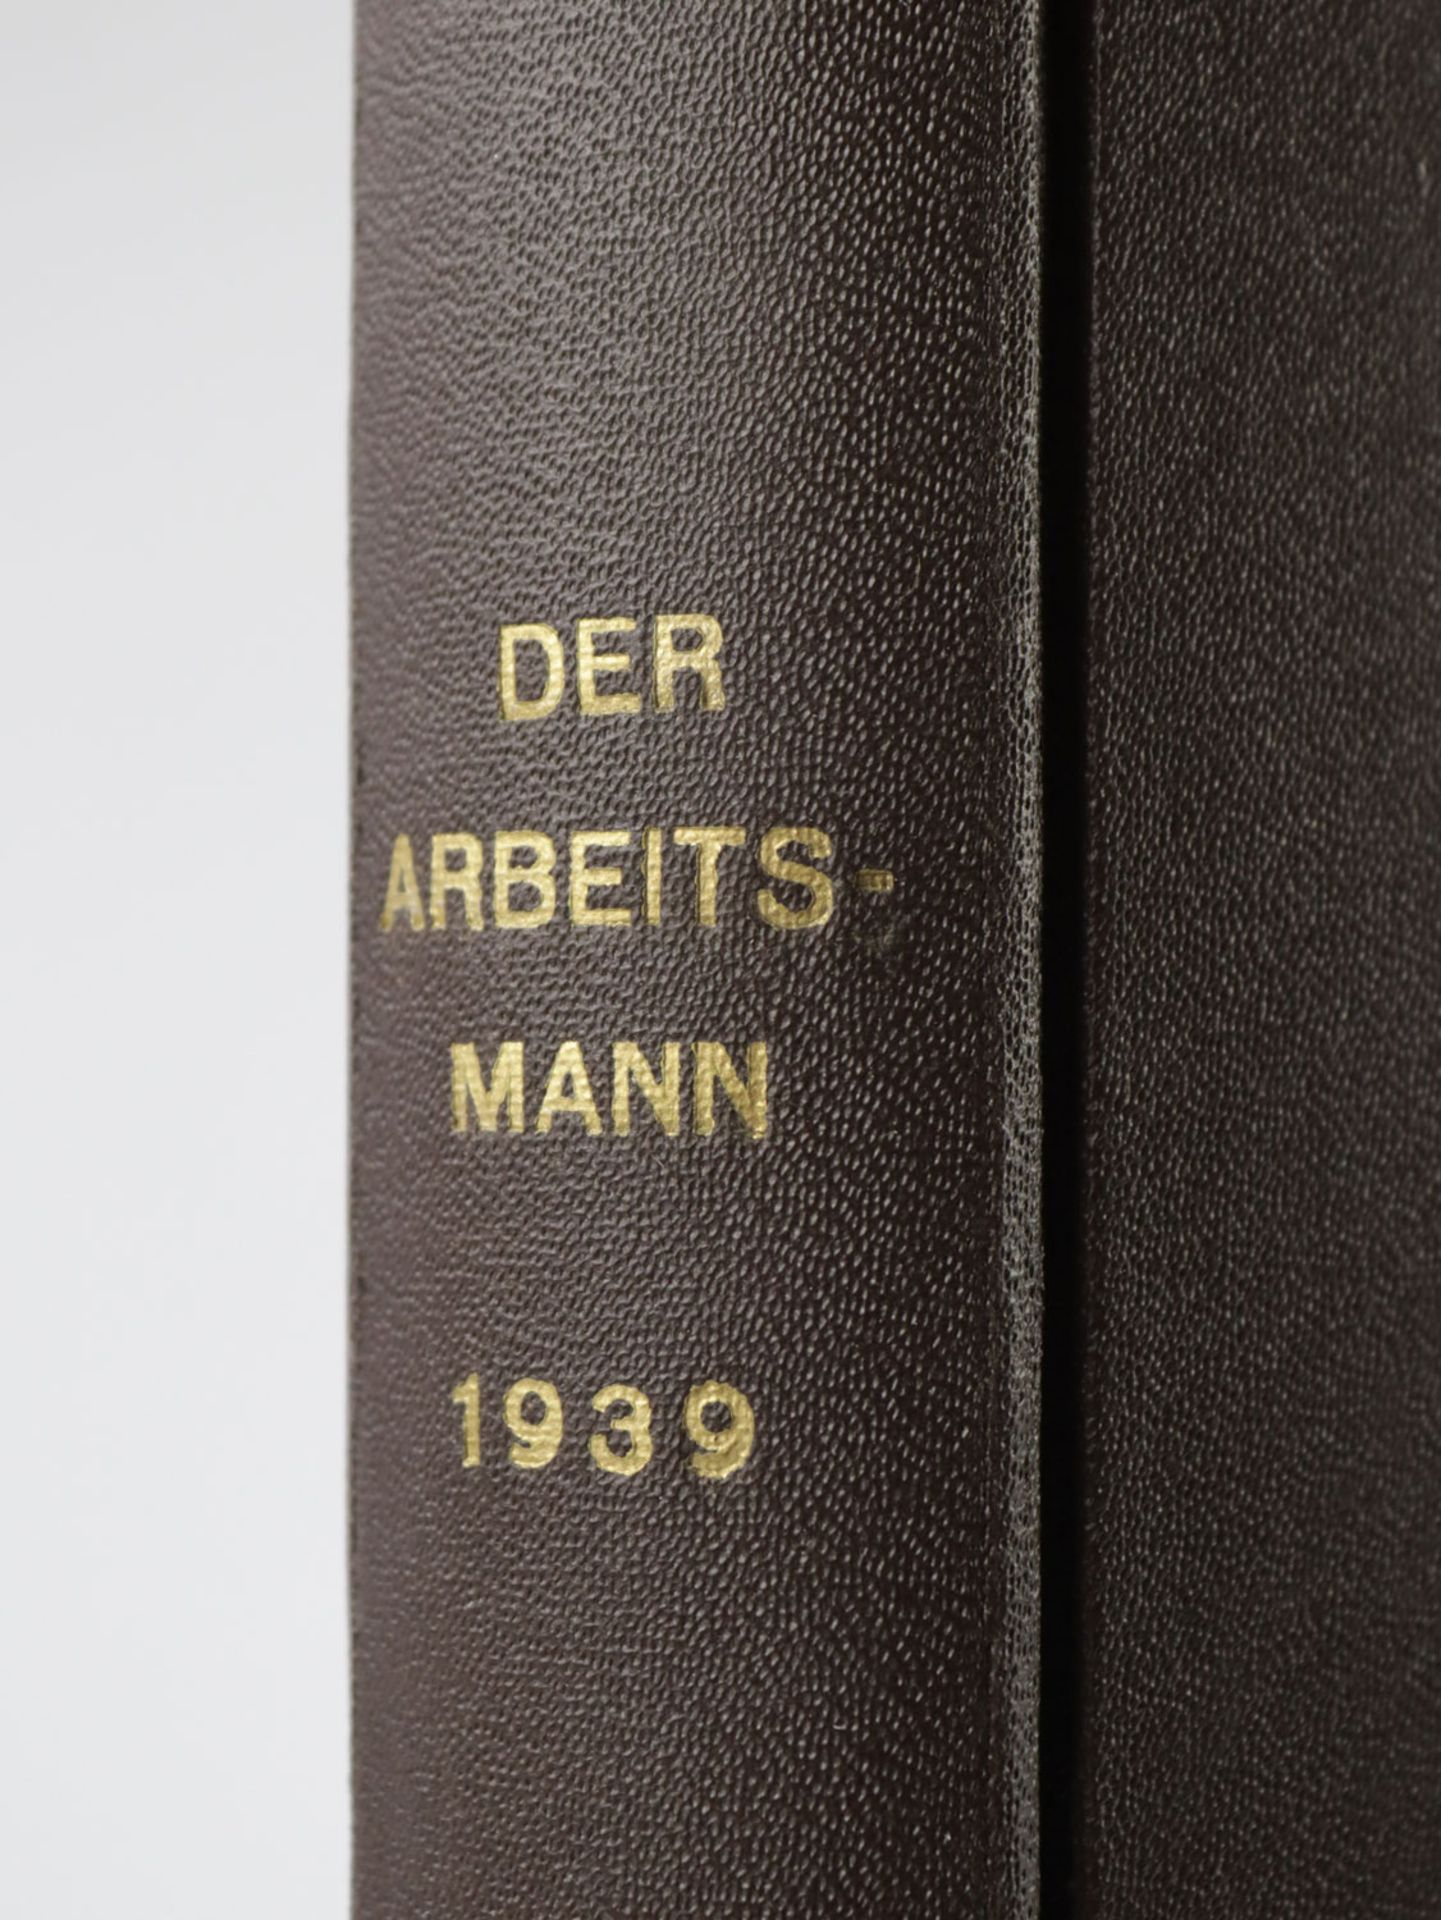 Zeitschrift - 3. Reich - Image 2 of 4